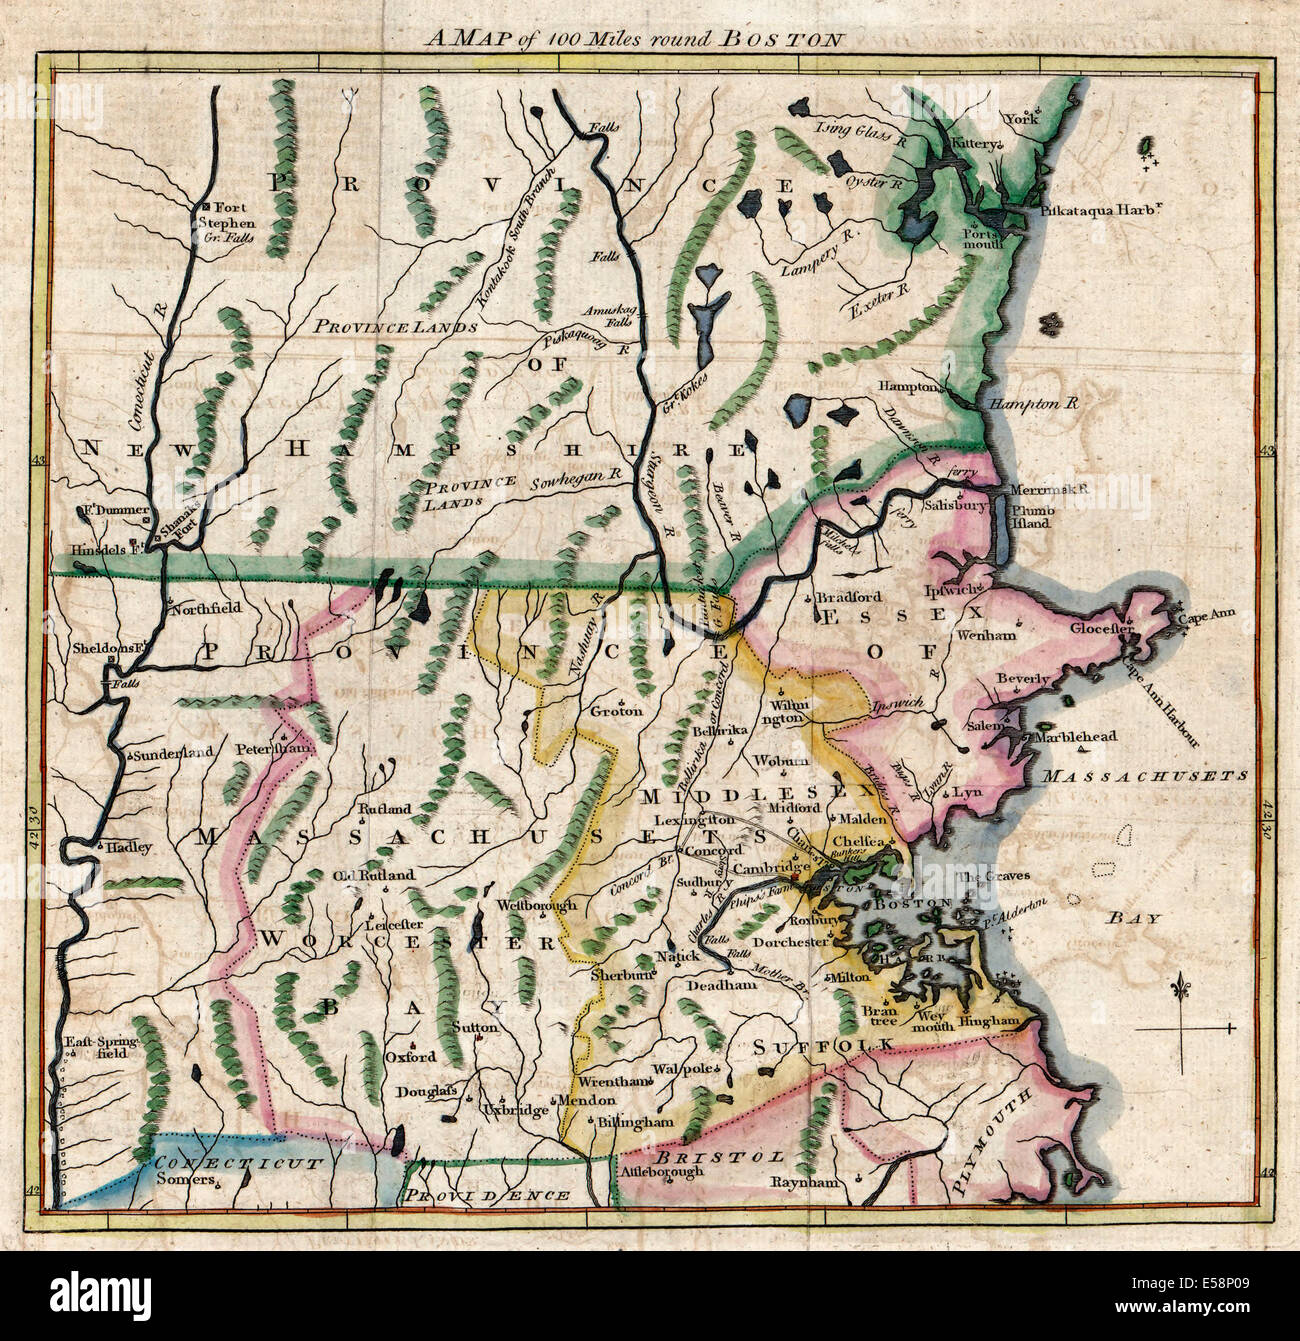 Una mappa di 100 miglia round Boston, Massachusetts, 1775 Foto Stock